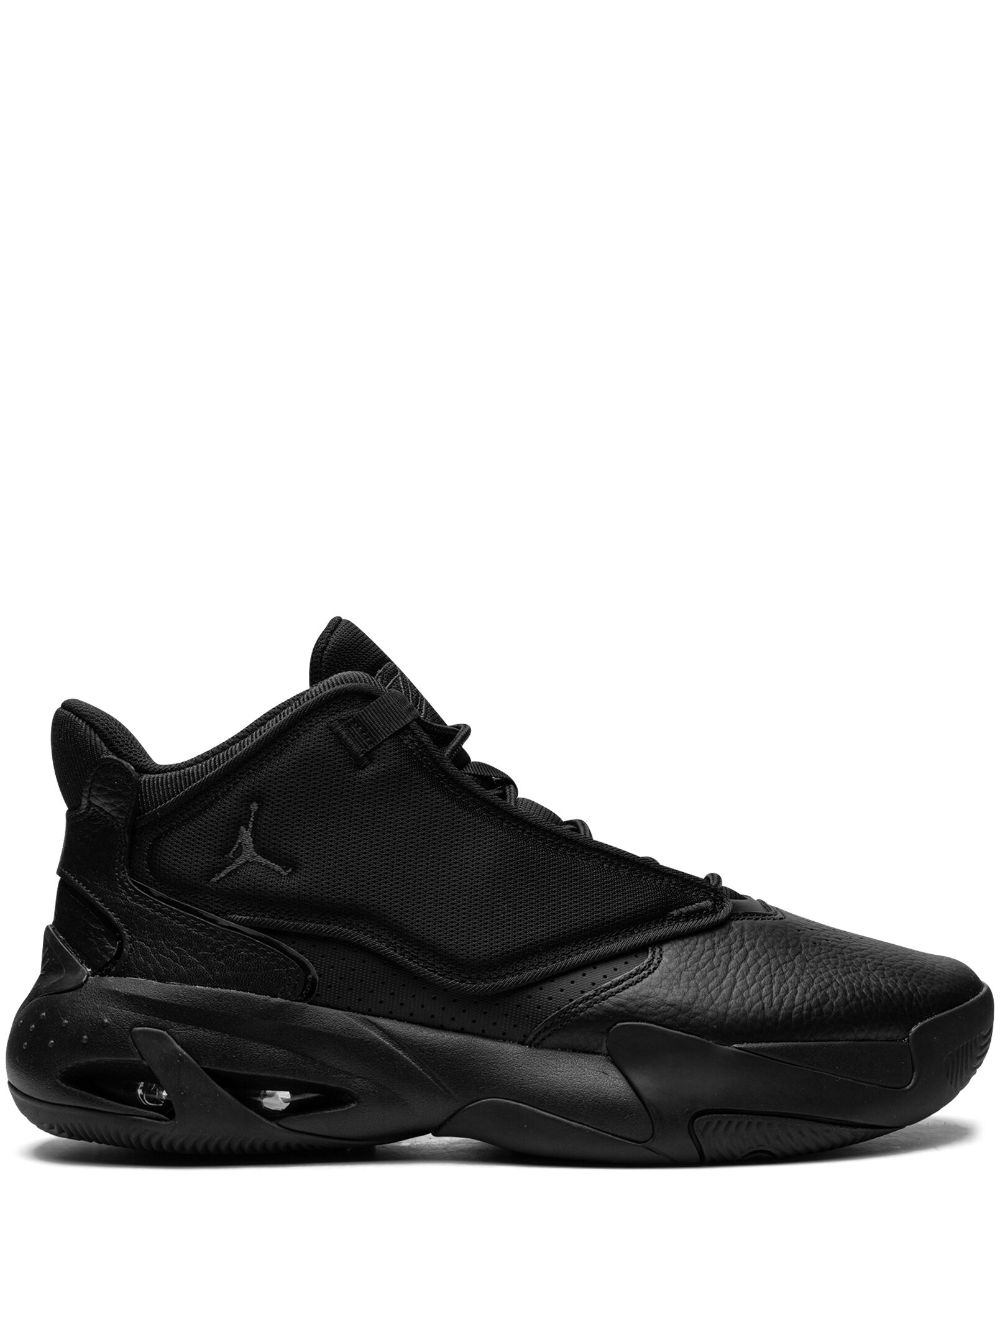 Jordan Max Aura 4 high-top sneakers - Black